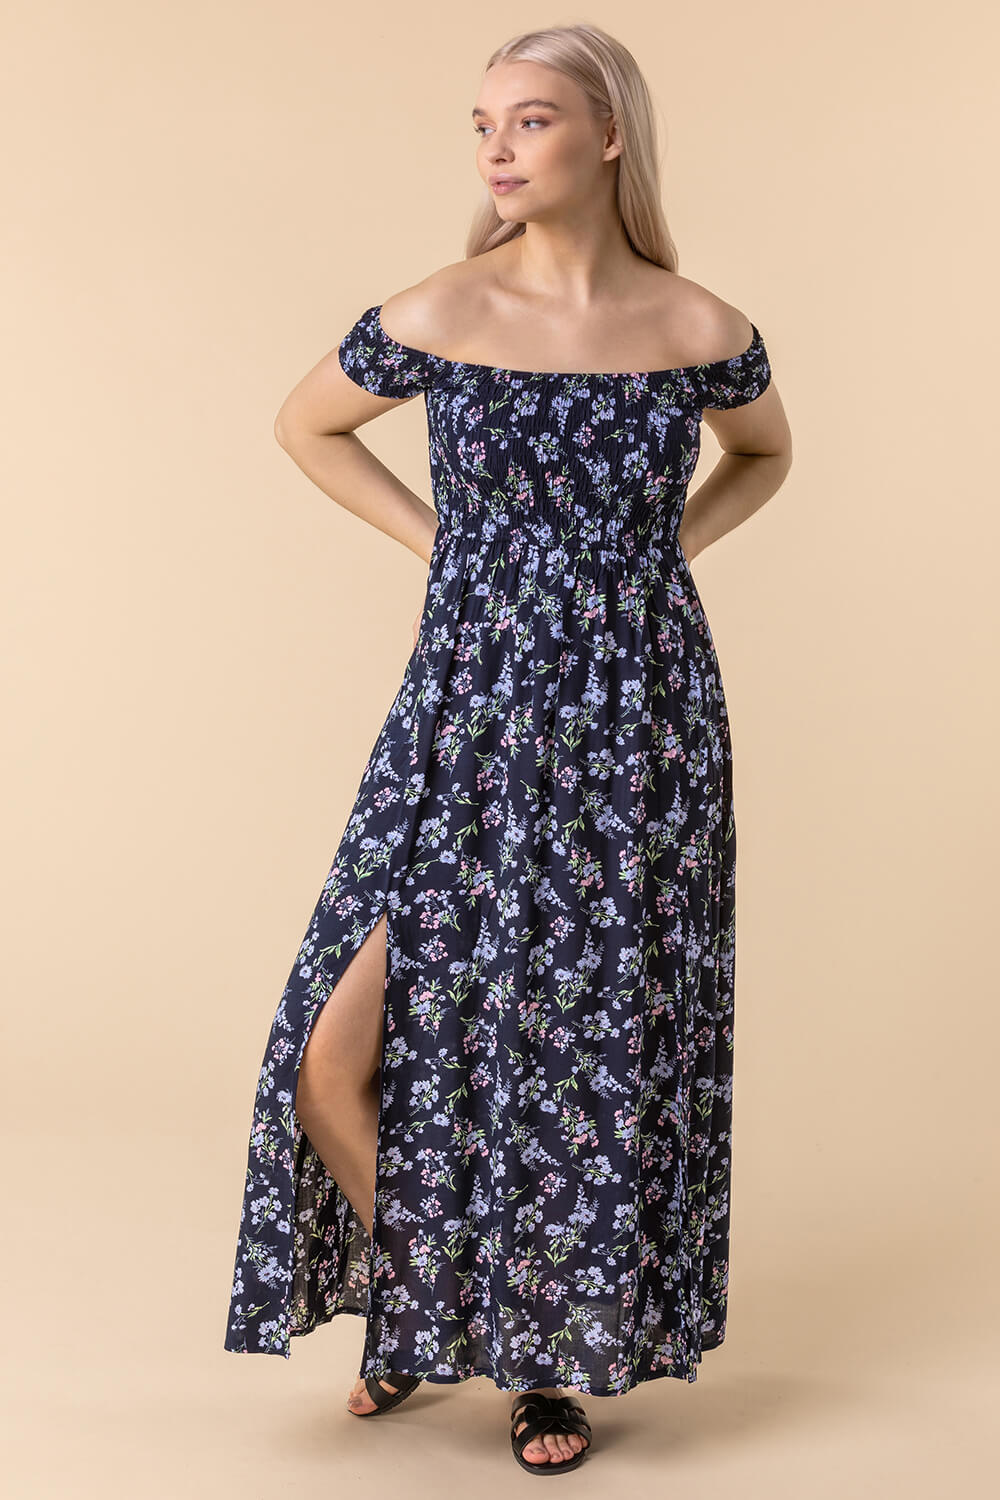 Shirred Ditsy Floral Print Bardot Dress